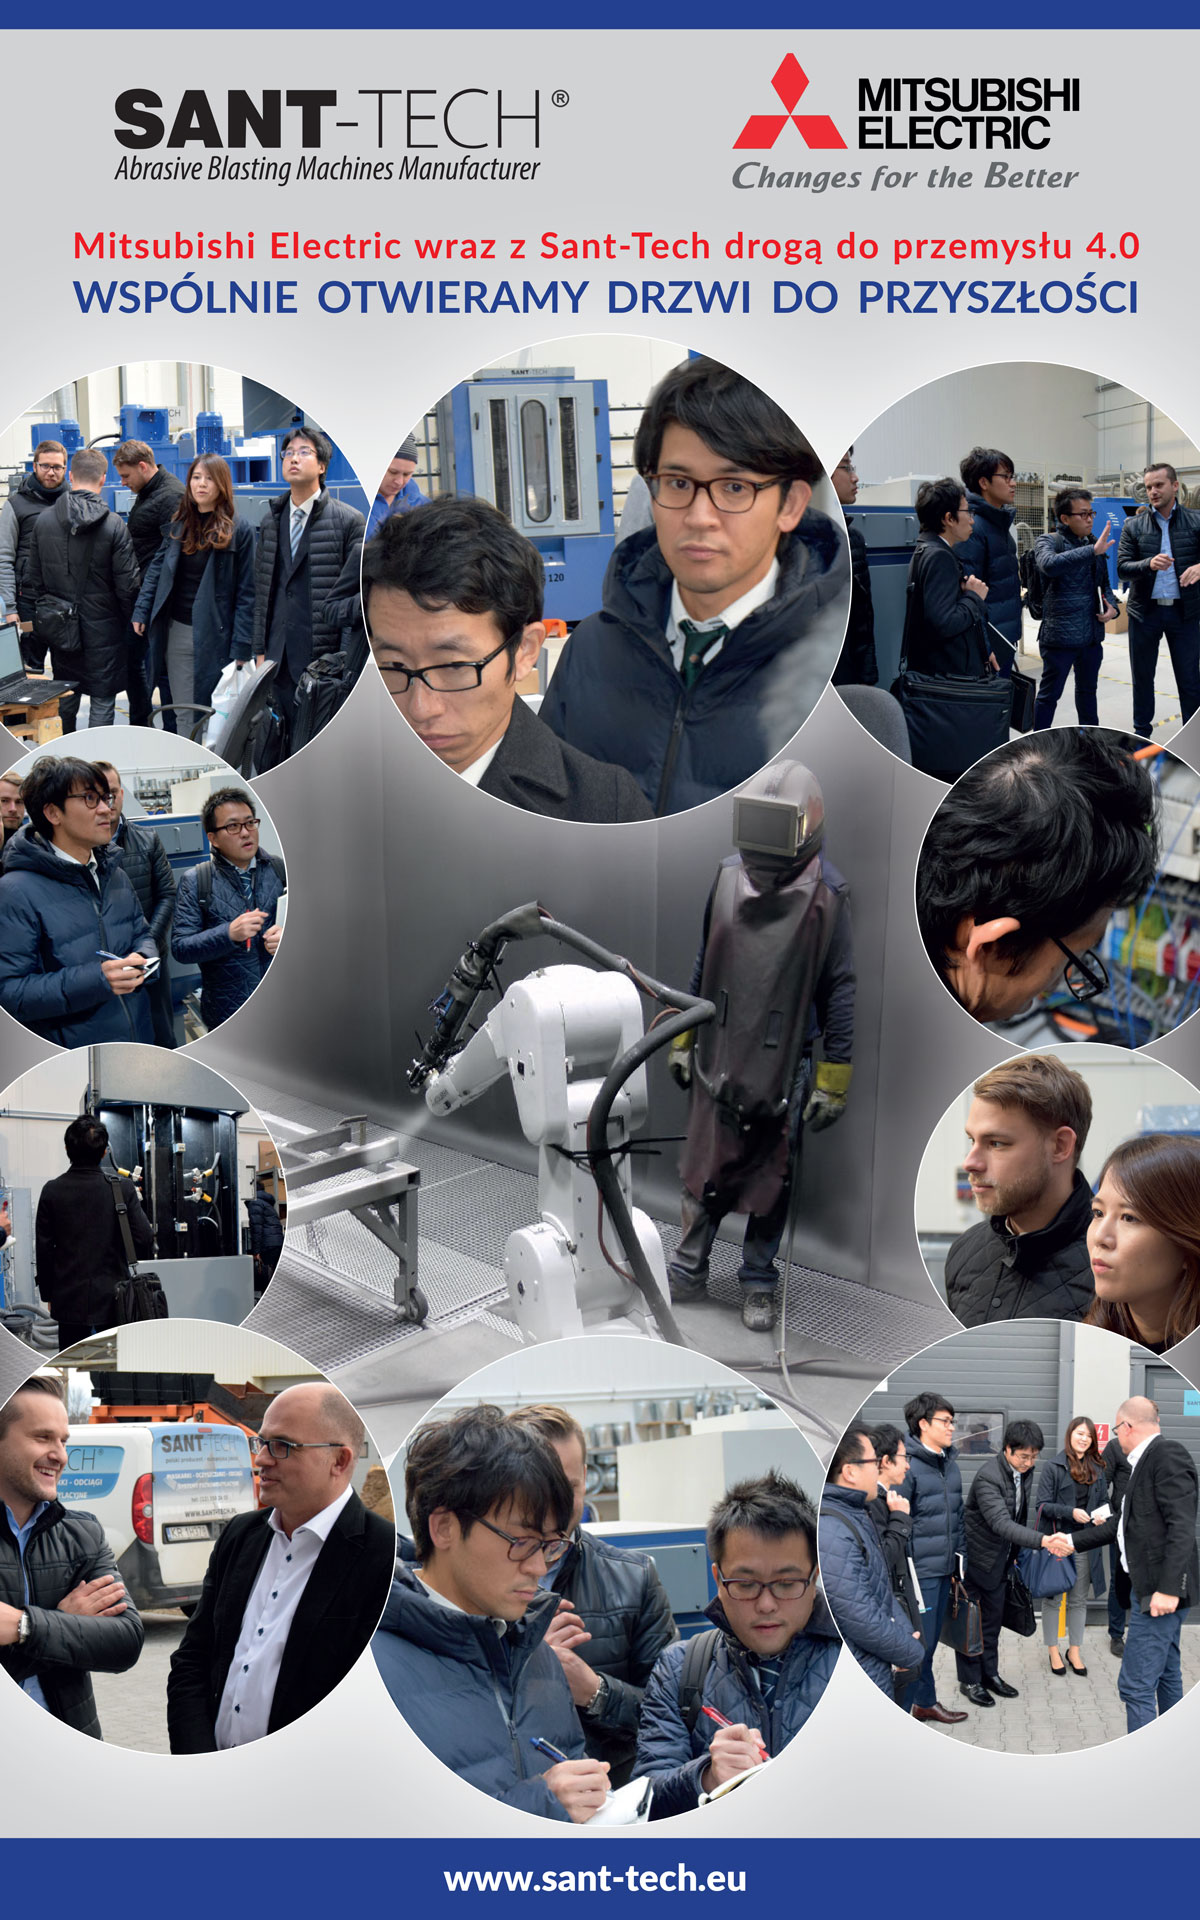 Сотрудничество SANT-TECH и MITSUBISHI ELECTRIC в области робототехники